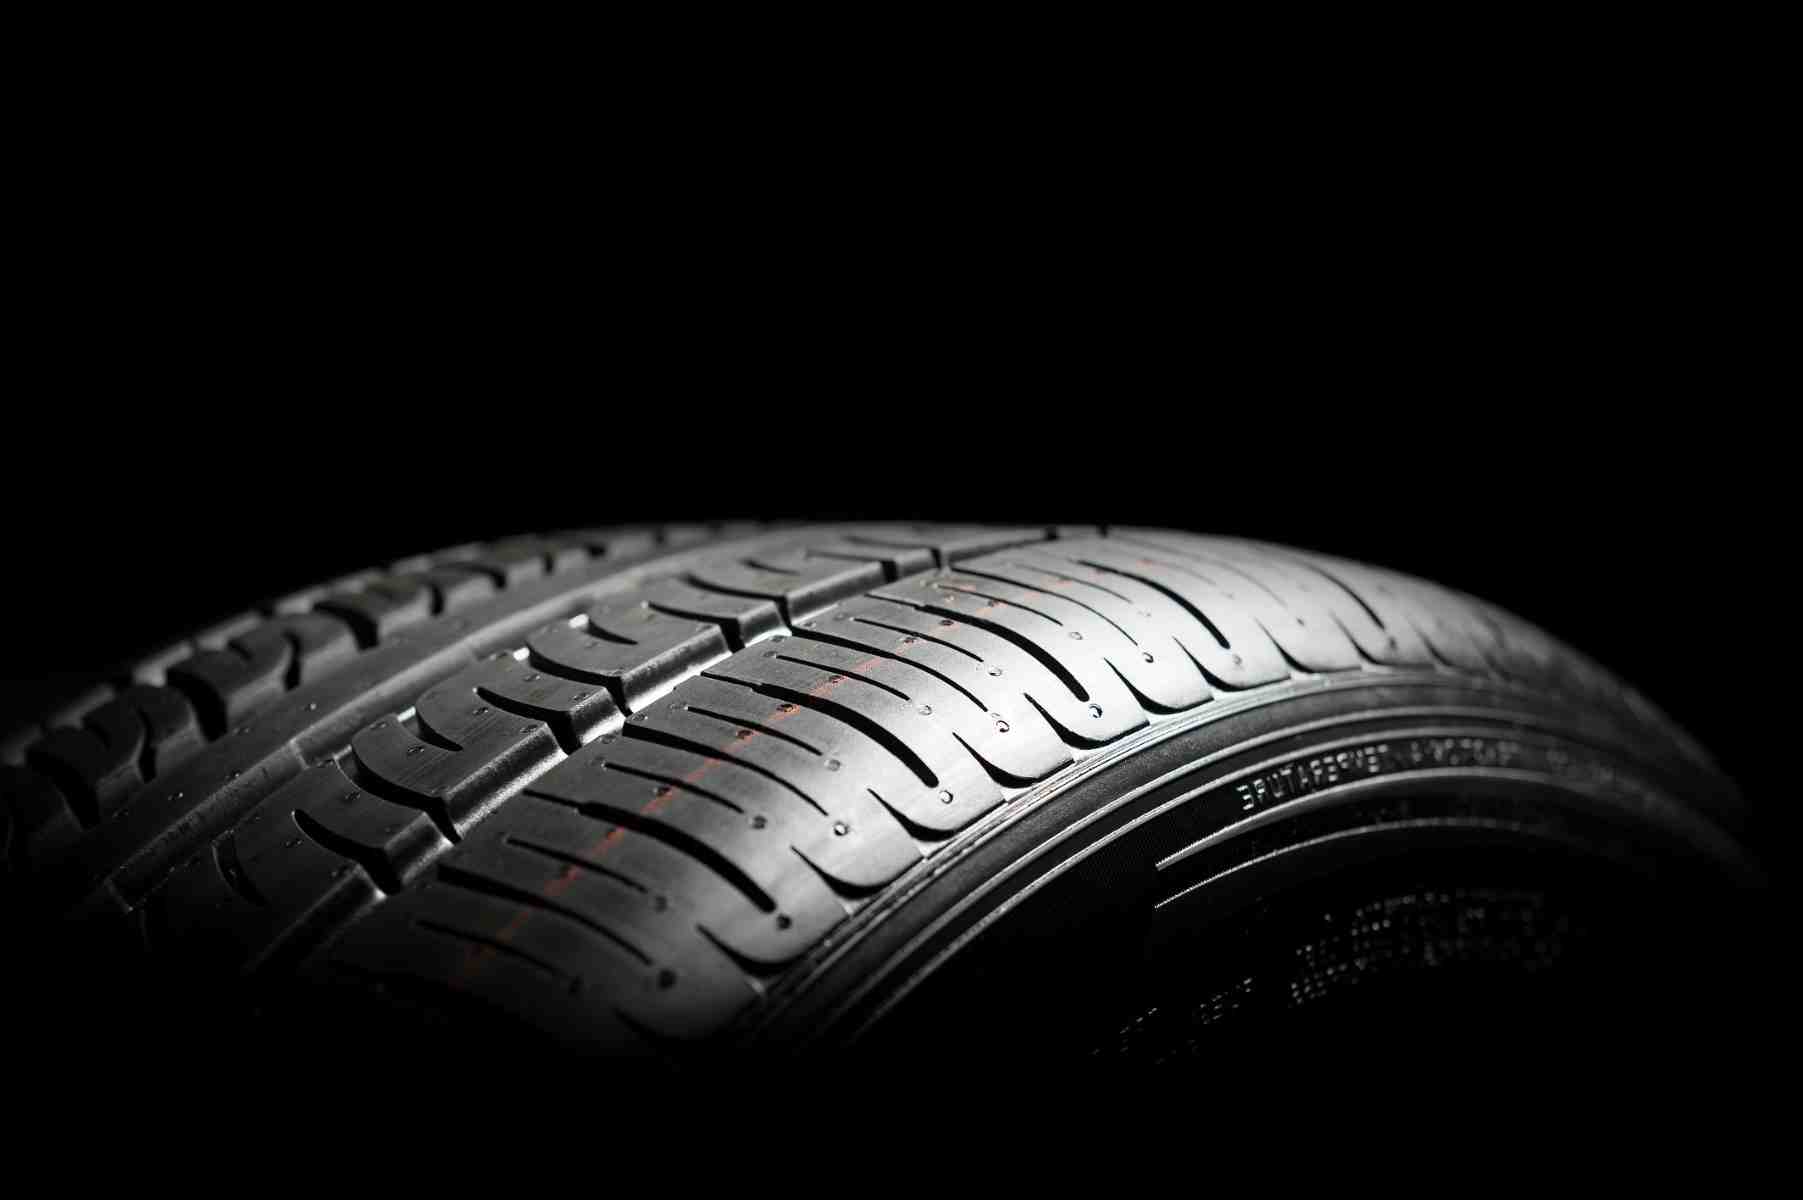 Quelle est l'épaisseur d'un pneu neuf?